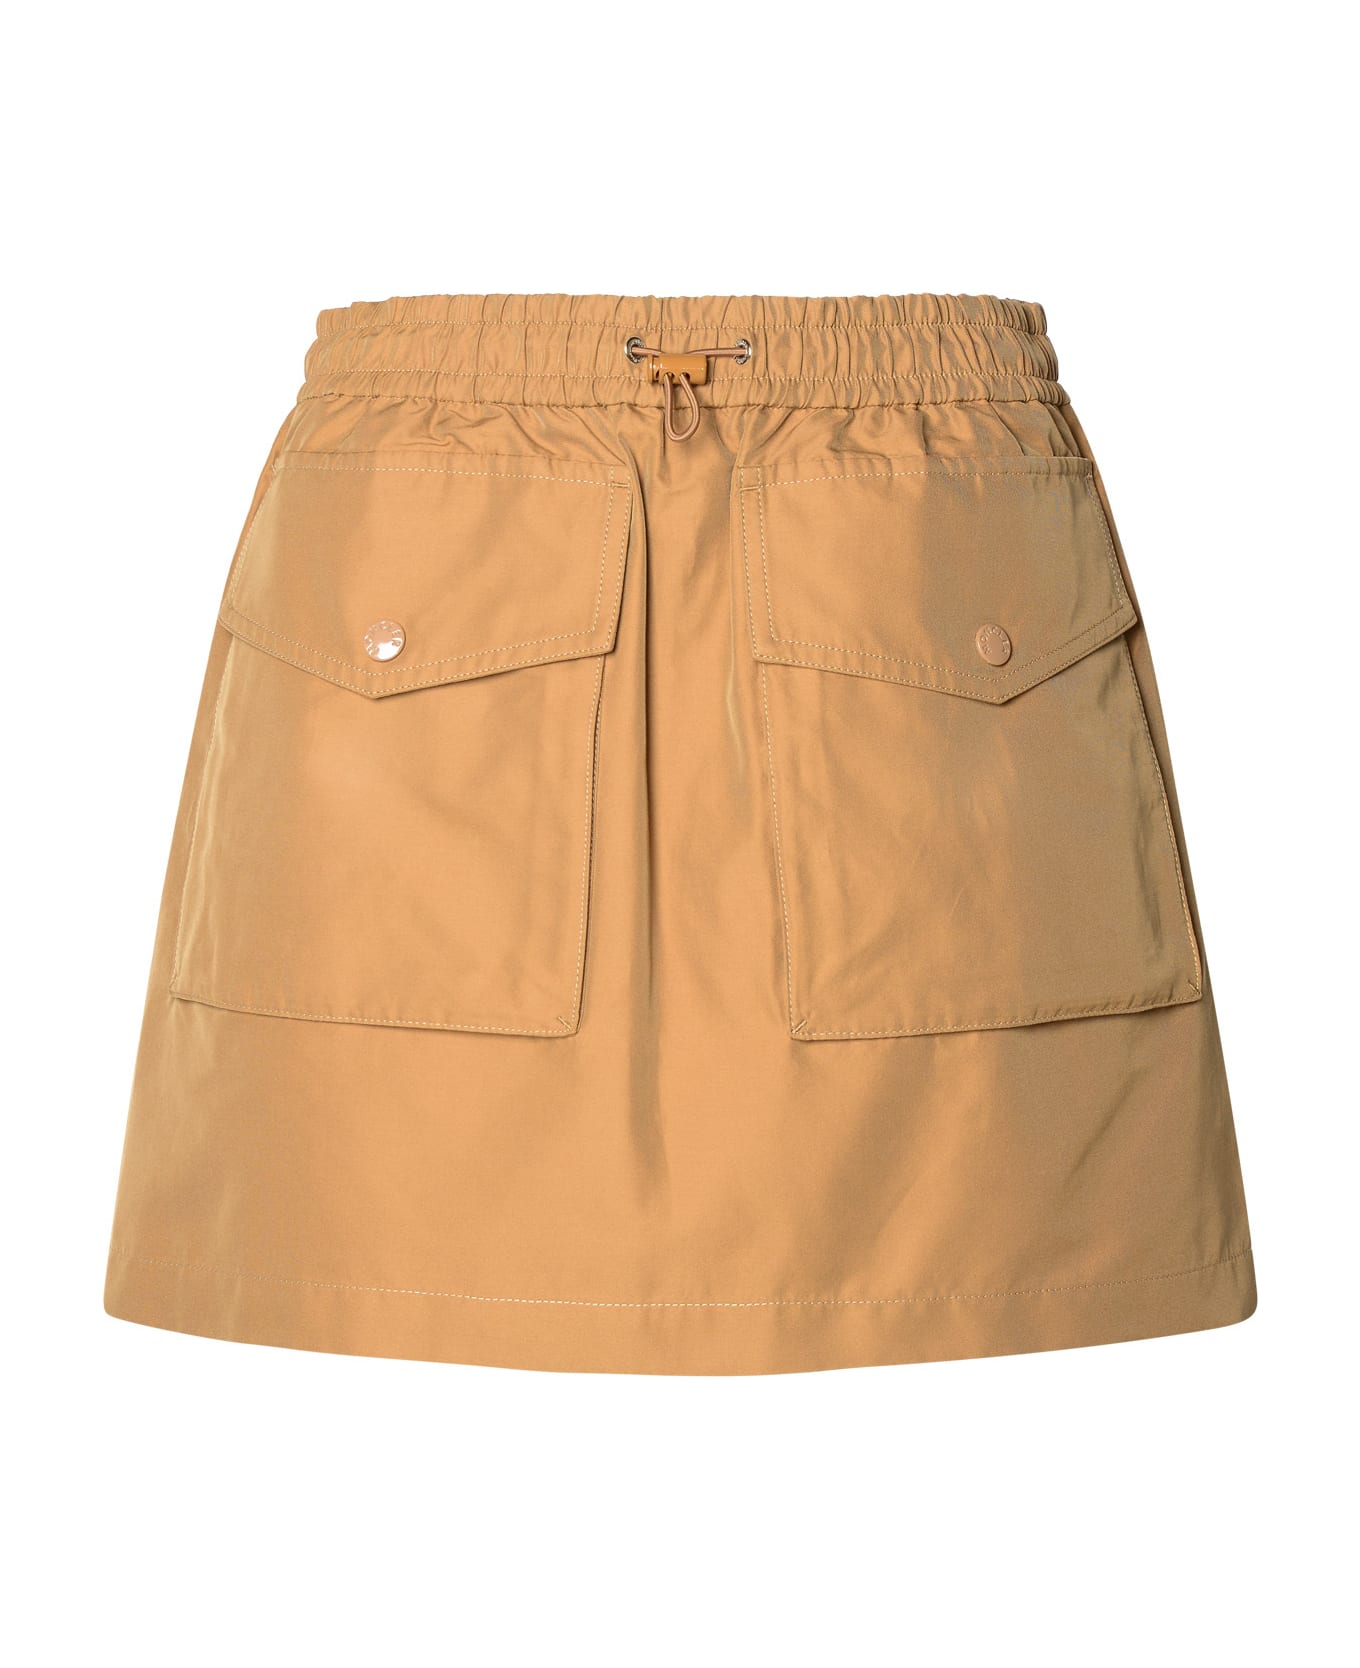 Moncler Cargo Miniskirt In Beige Cotton Blend - Beige